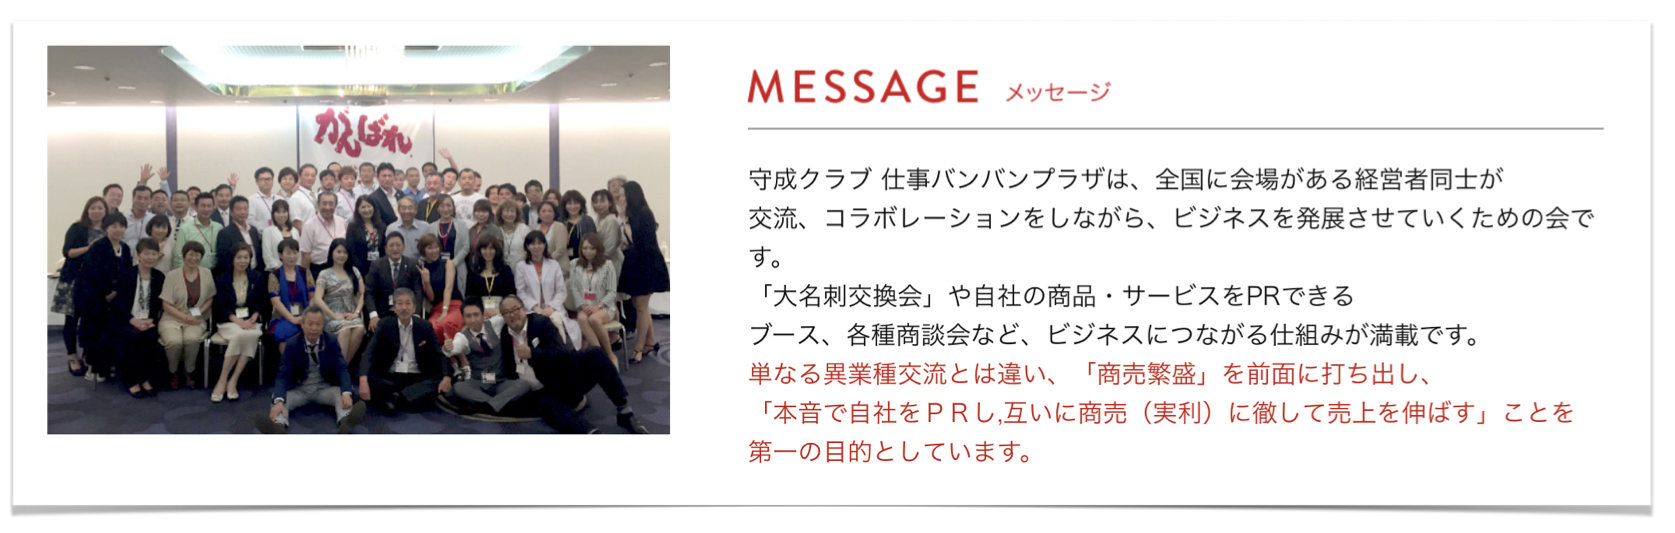 守成クラブ神戸:ビジネス交流会のメッセージ